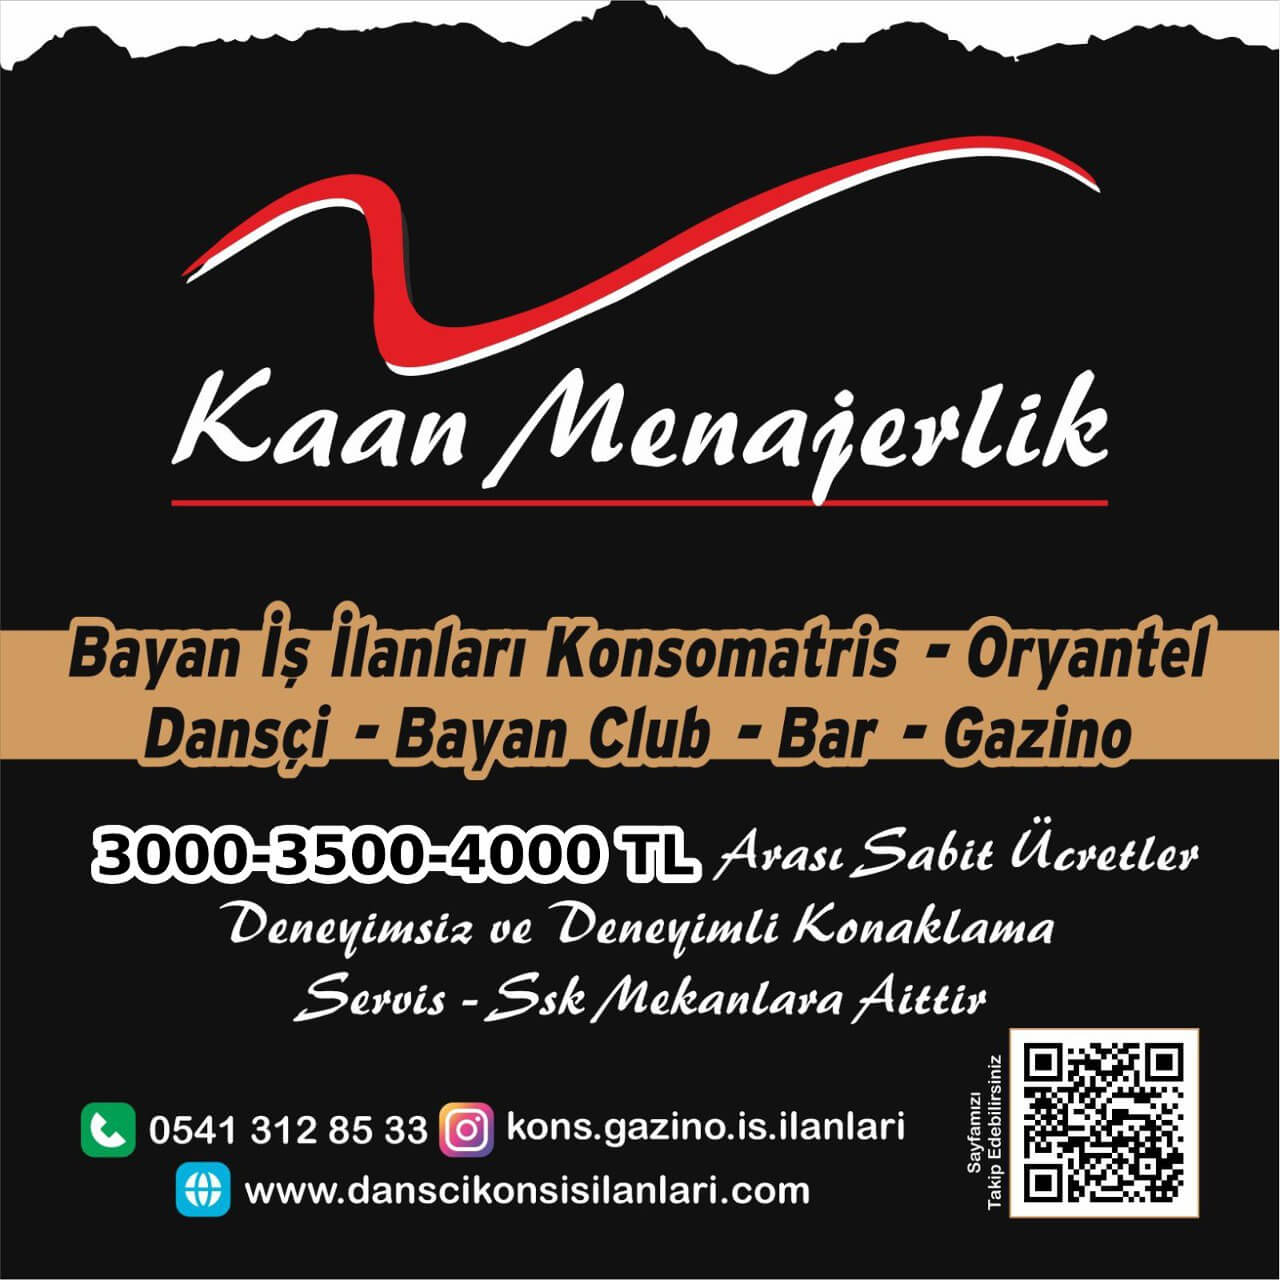 Zonguldak konsomatris iş ilanları